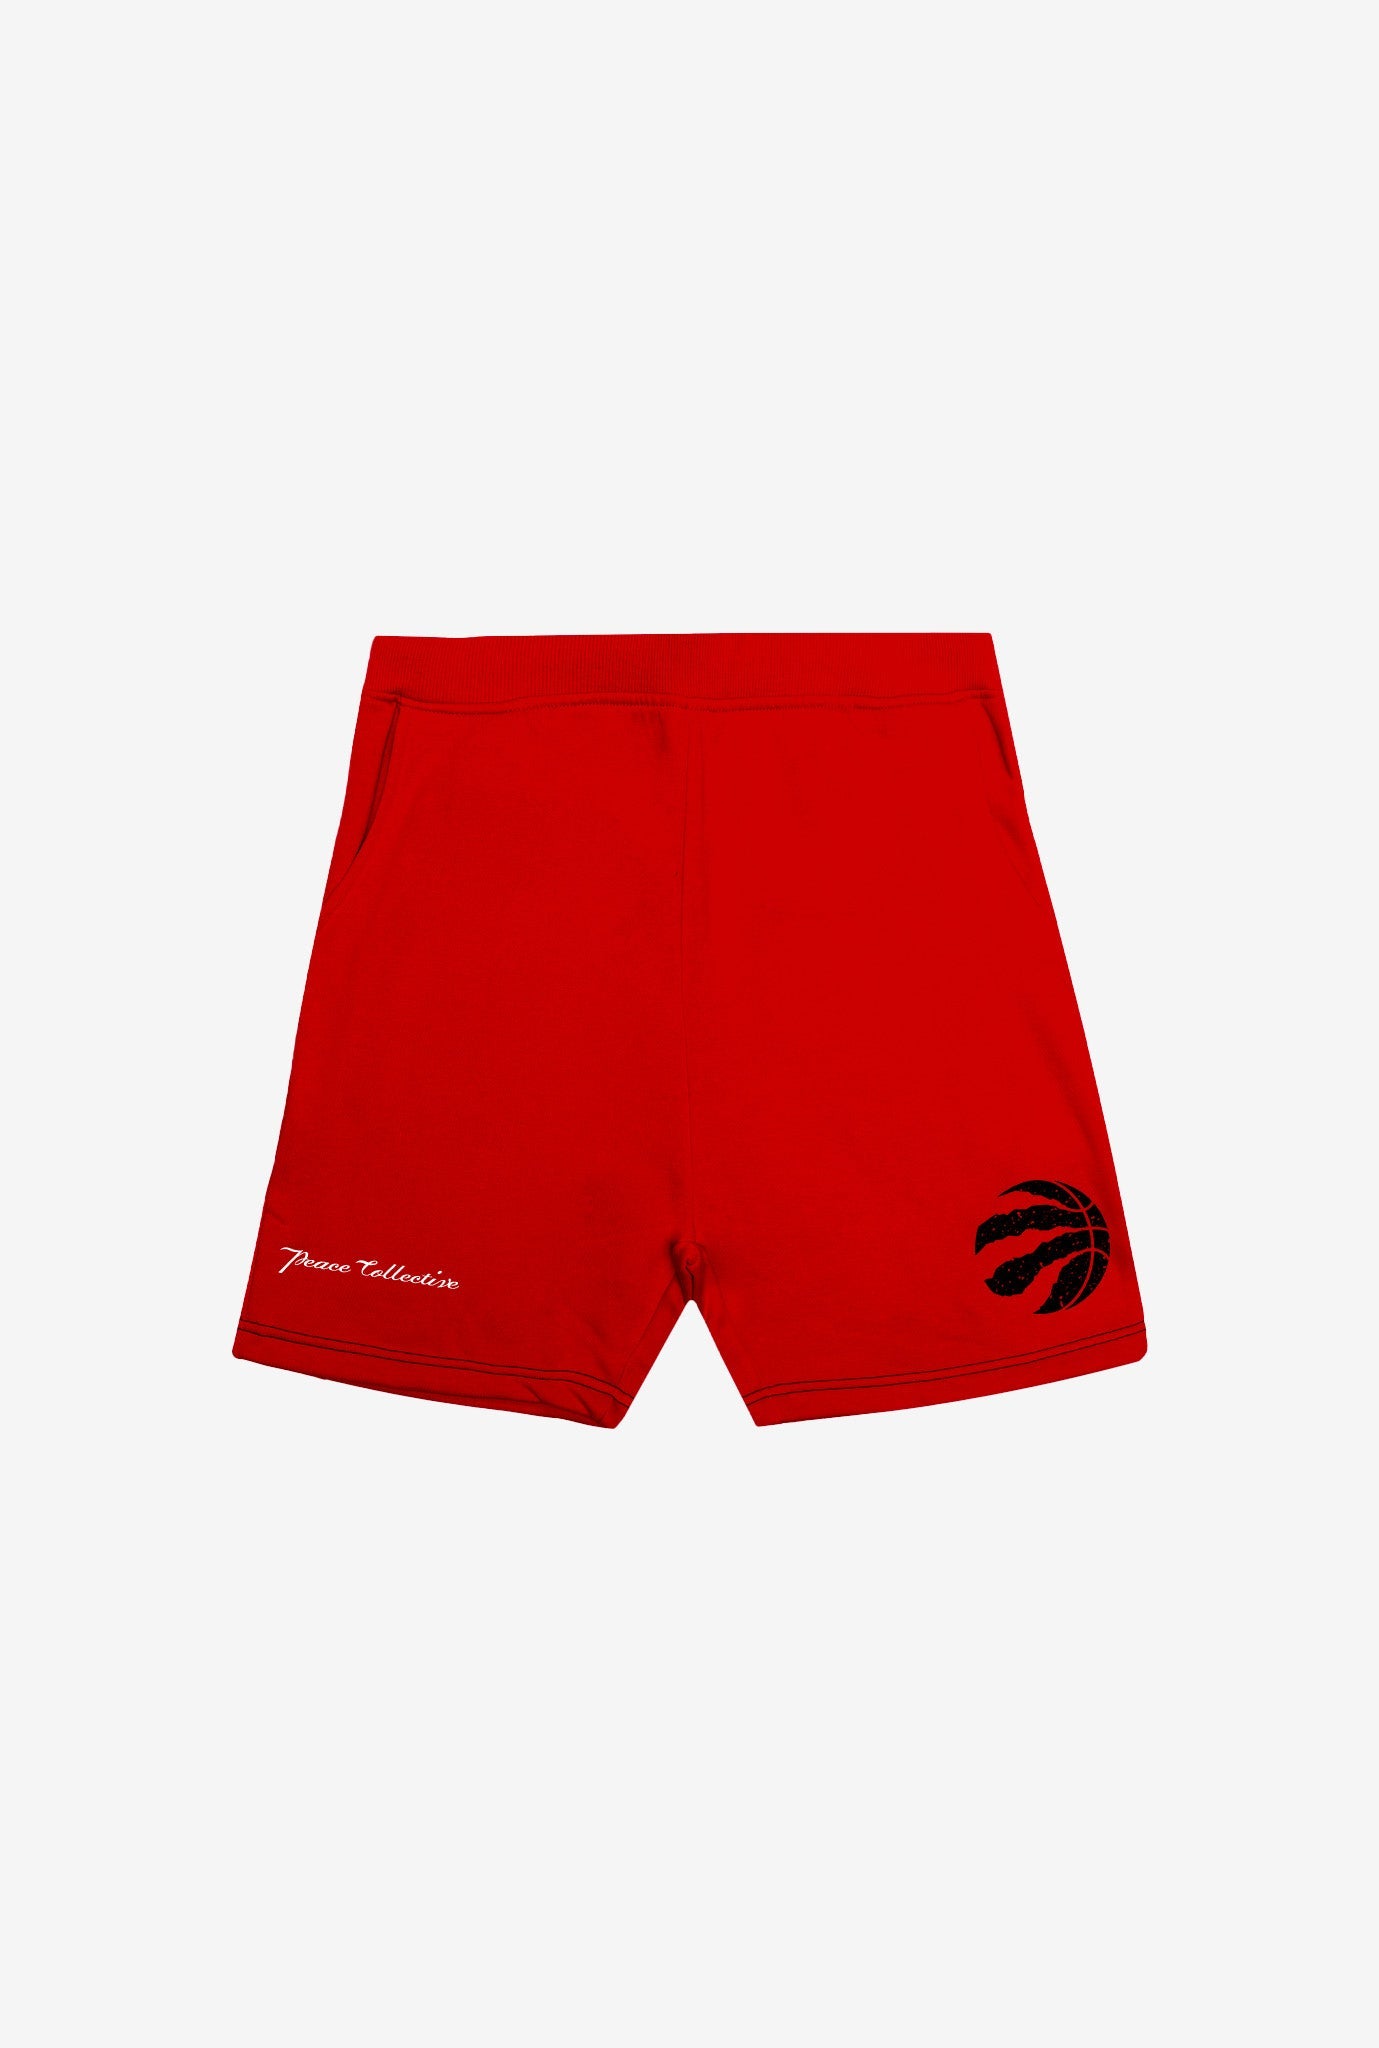 Toronto Raptors Fleece Shorts - Red